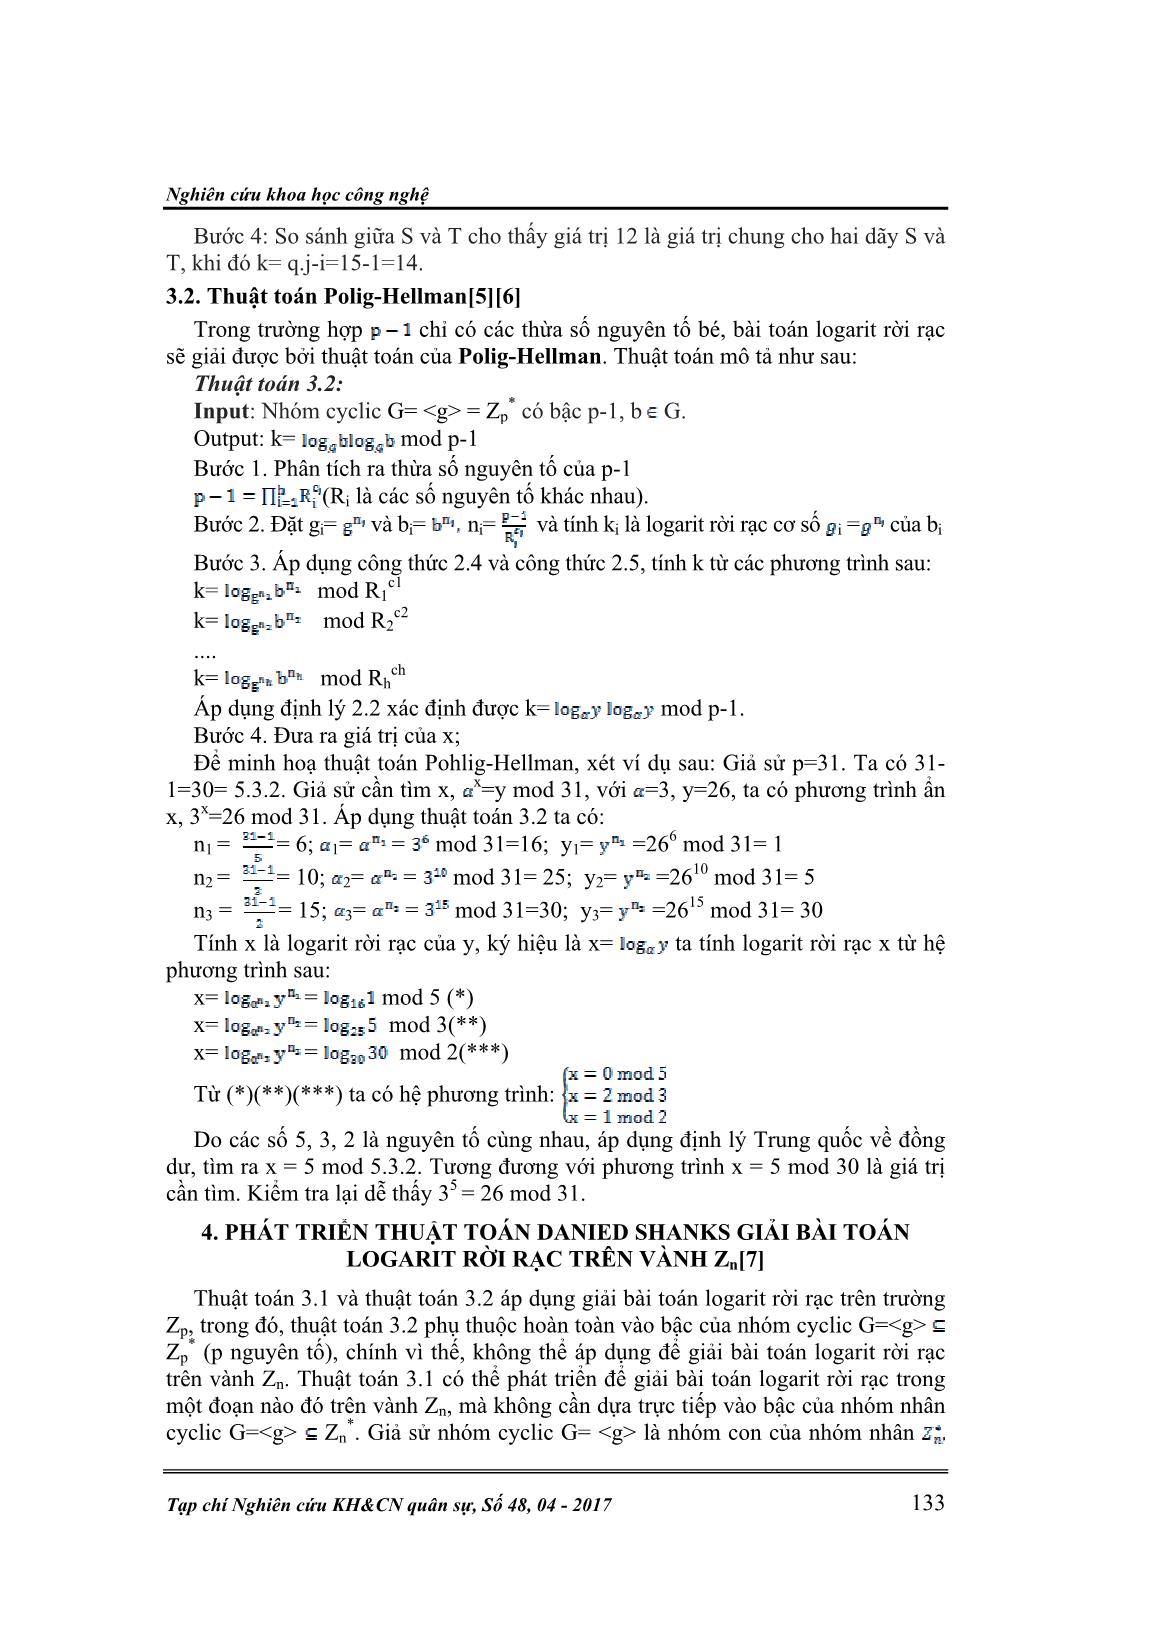 Phát triển thuật toán của Danied Shank để giải bài toán Logarit rời rạc trên vành Zn trang 5